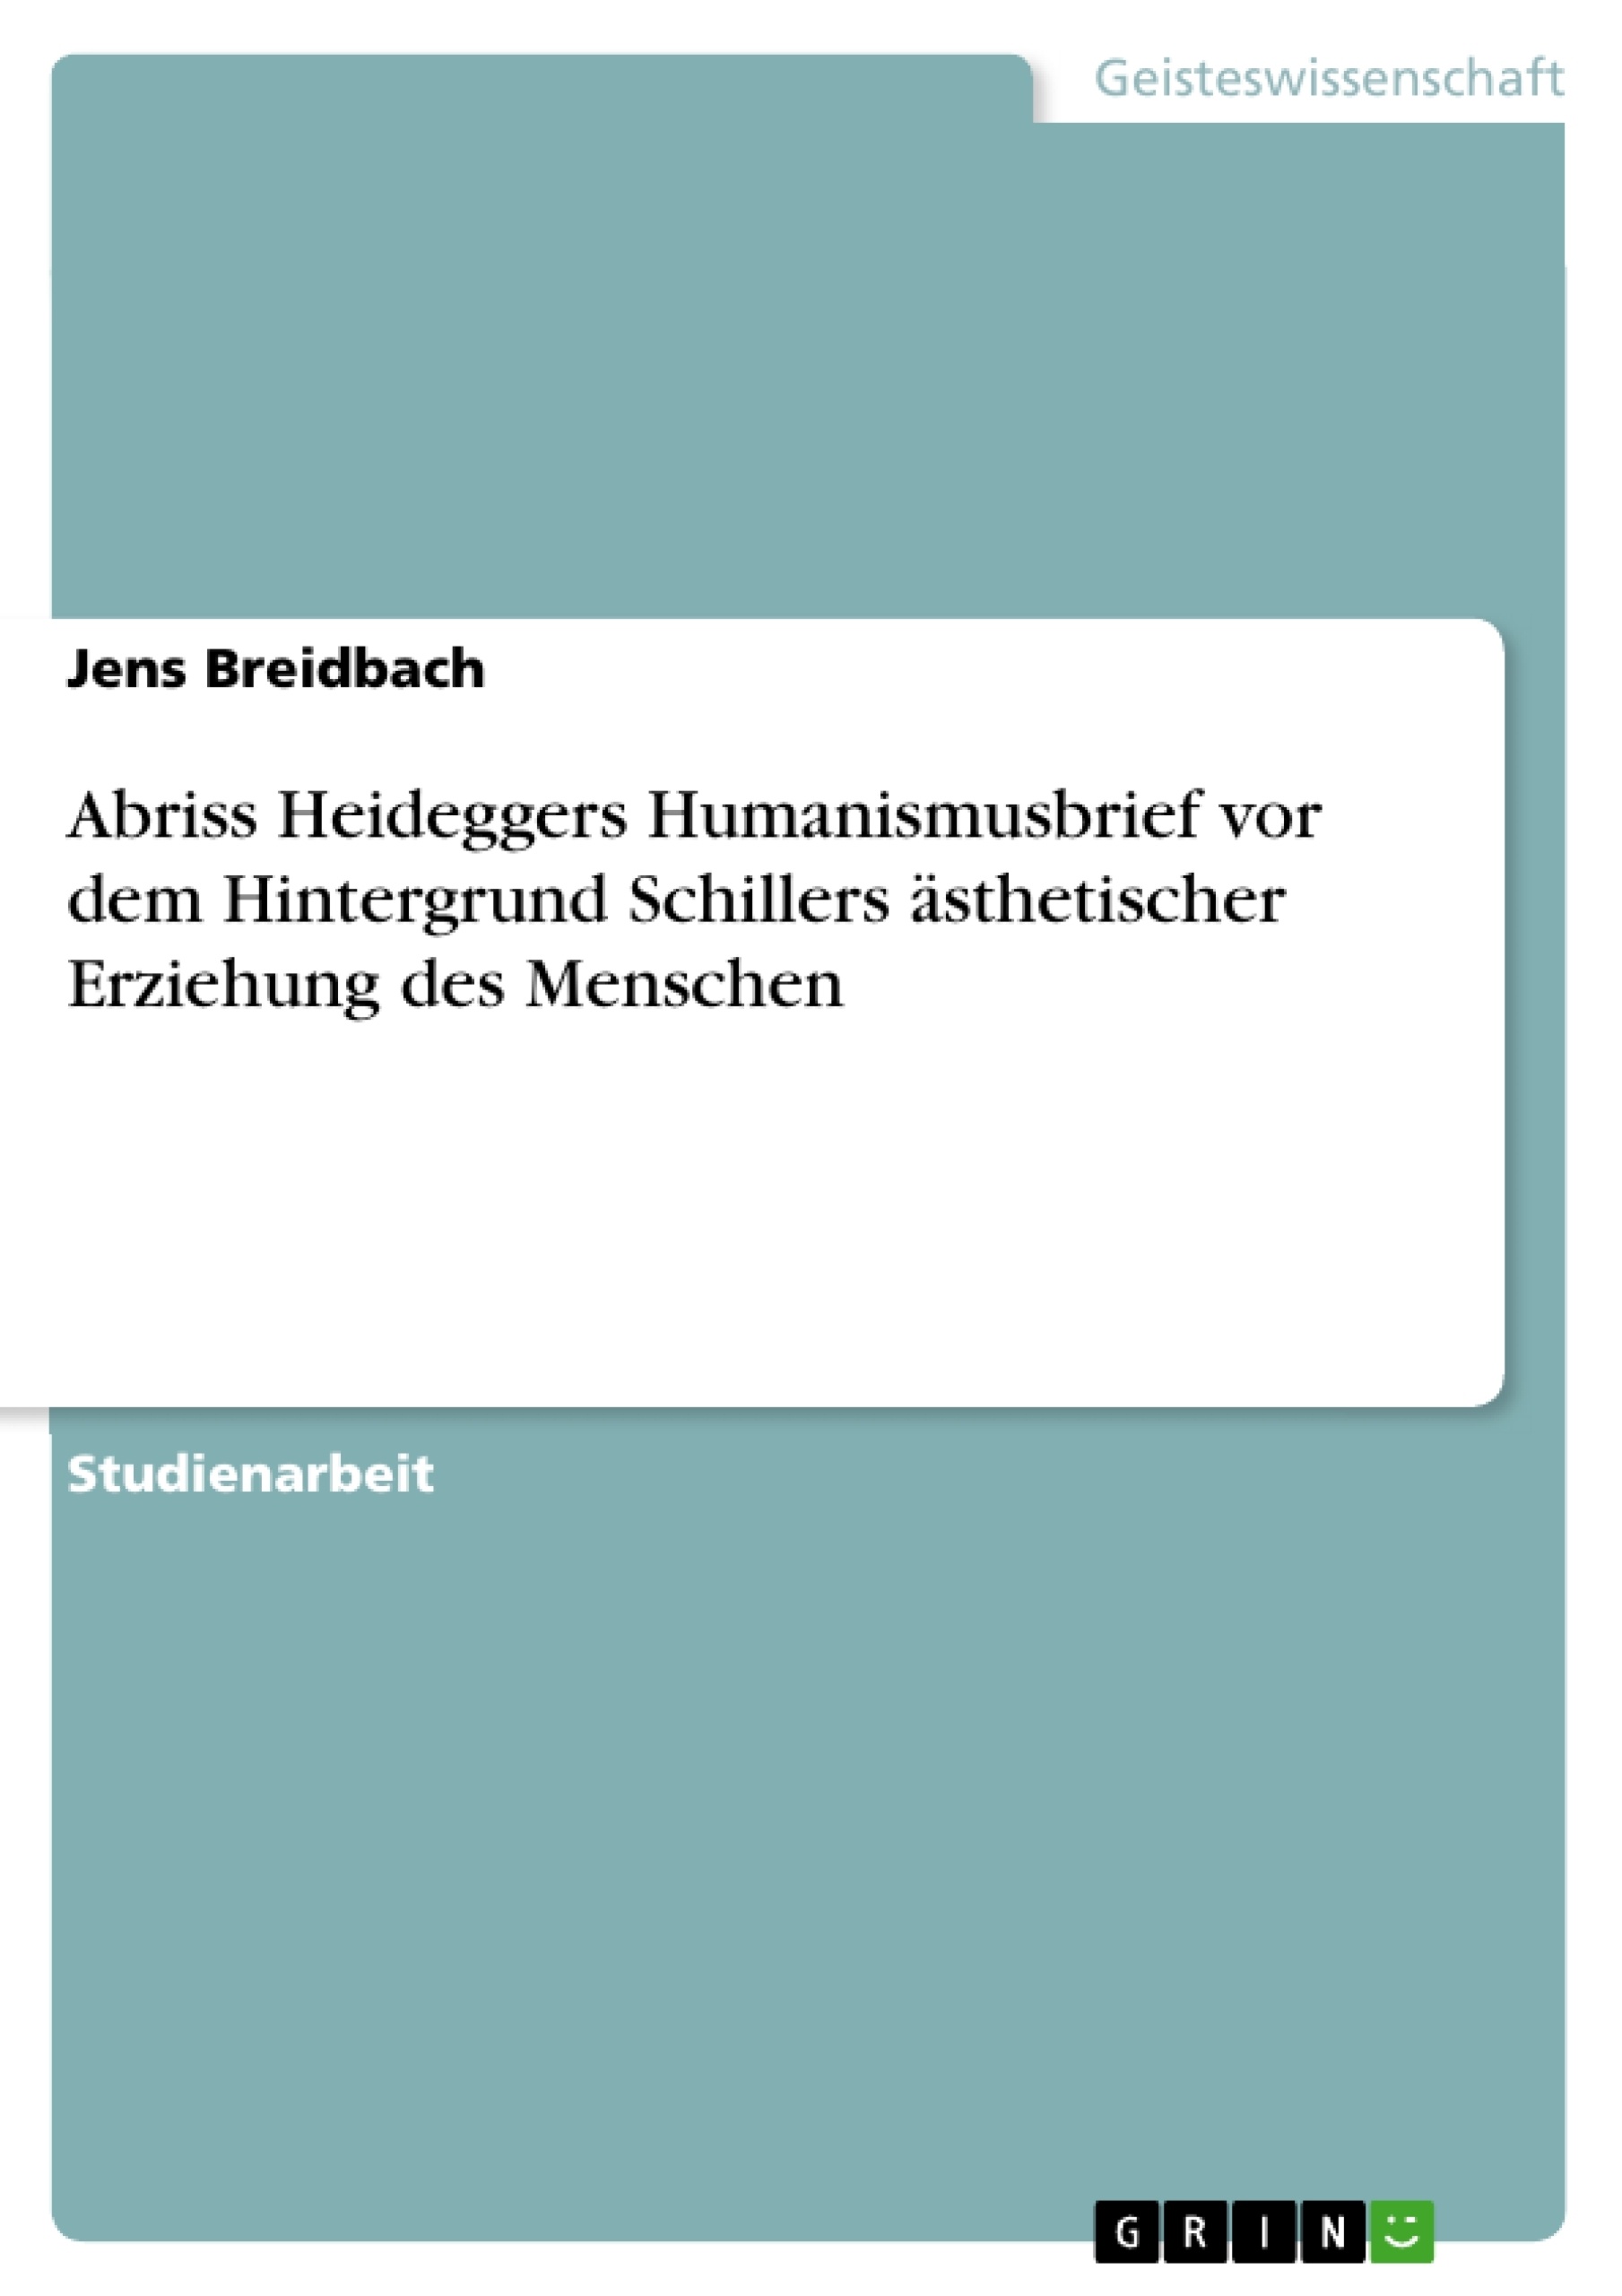 Title: Abriss Heideggers Humanismusbrief vor dem Hintergrund Schillers ästhetischer Erziehung des Menschen